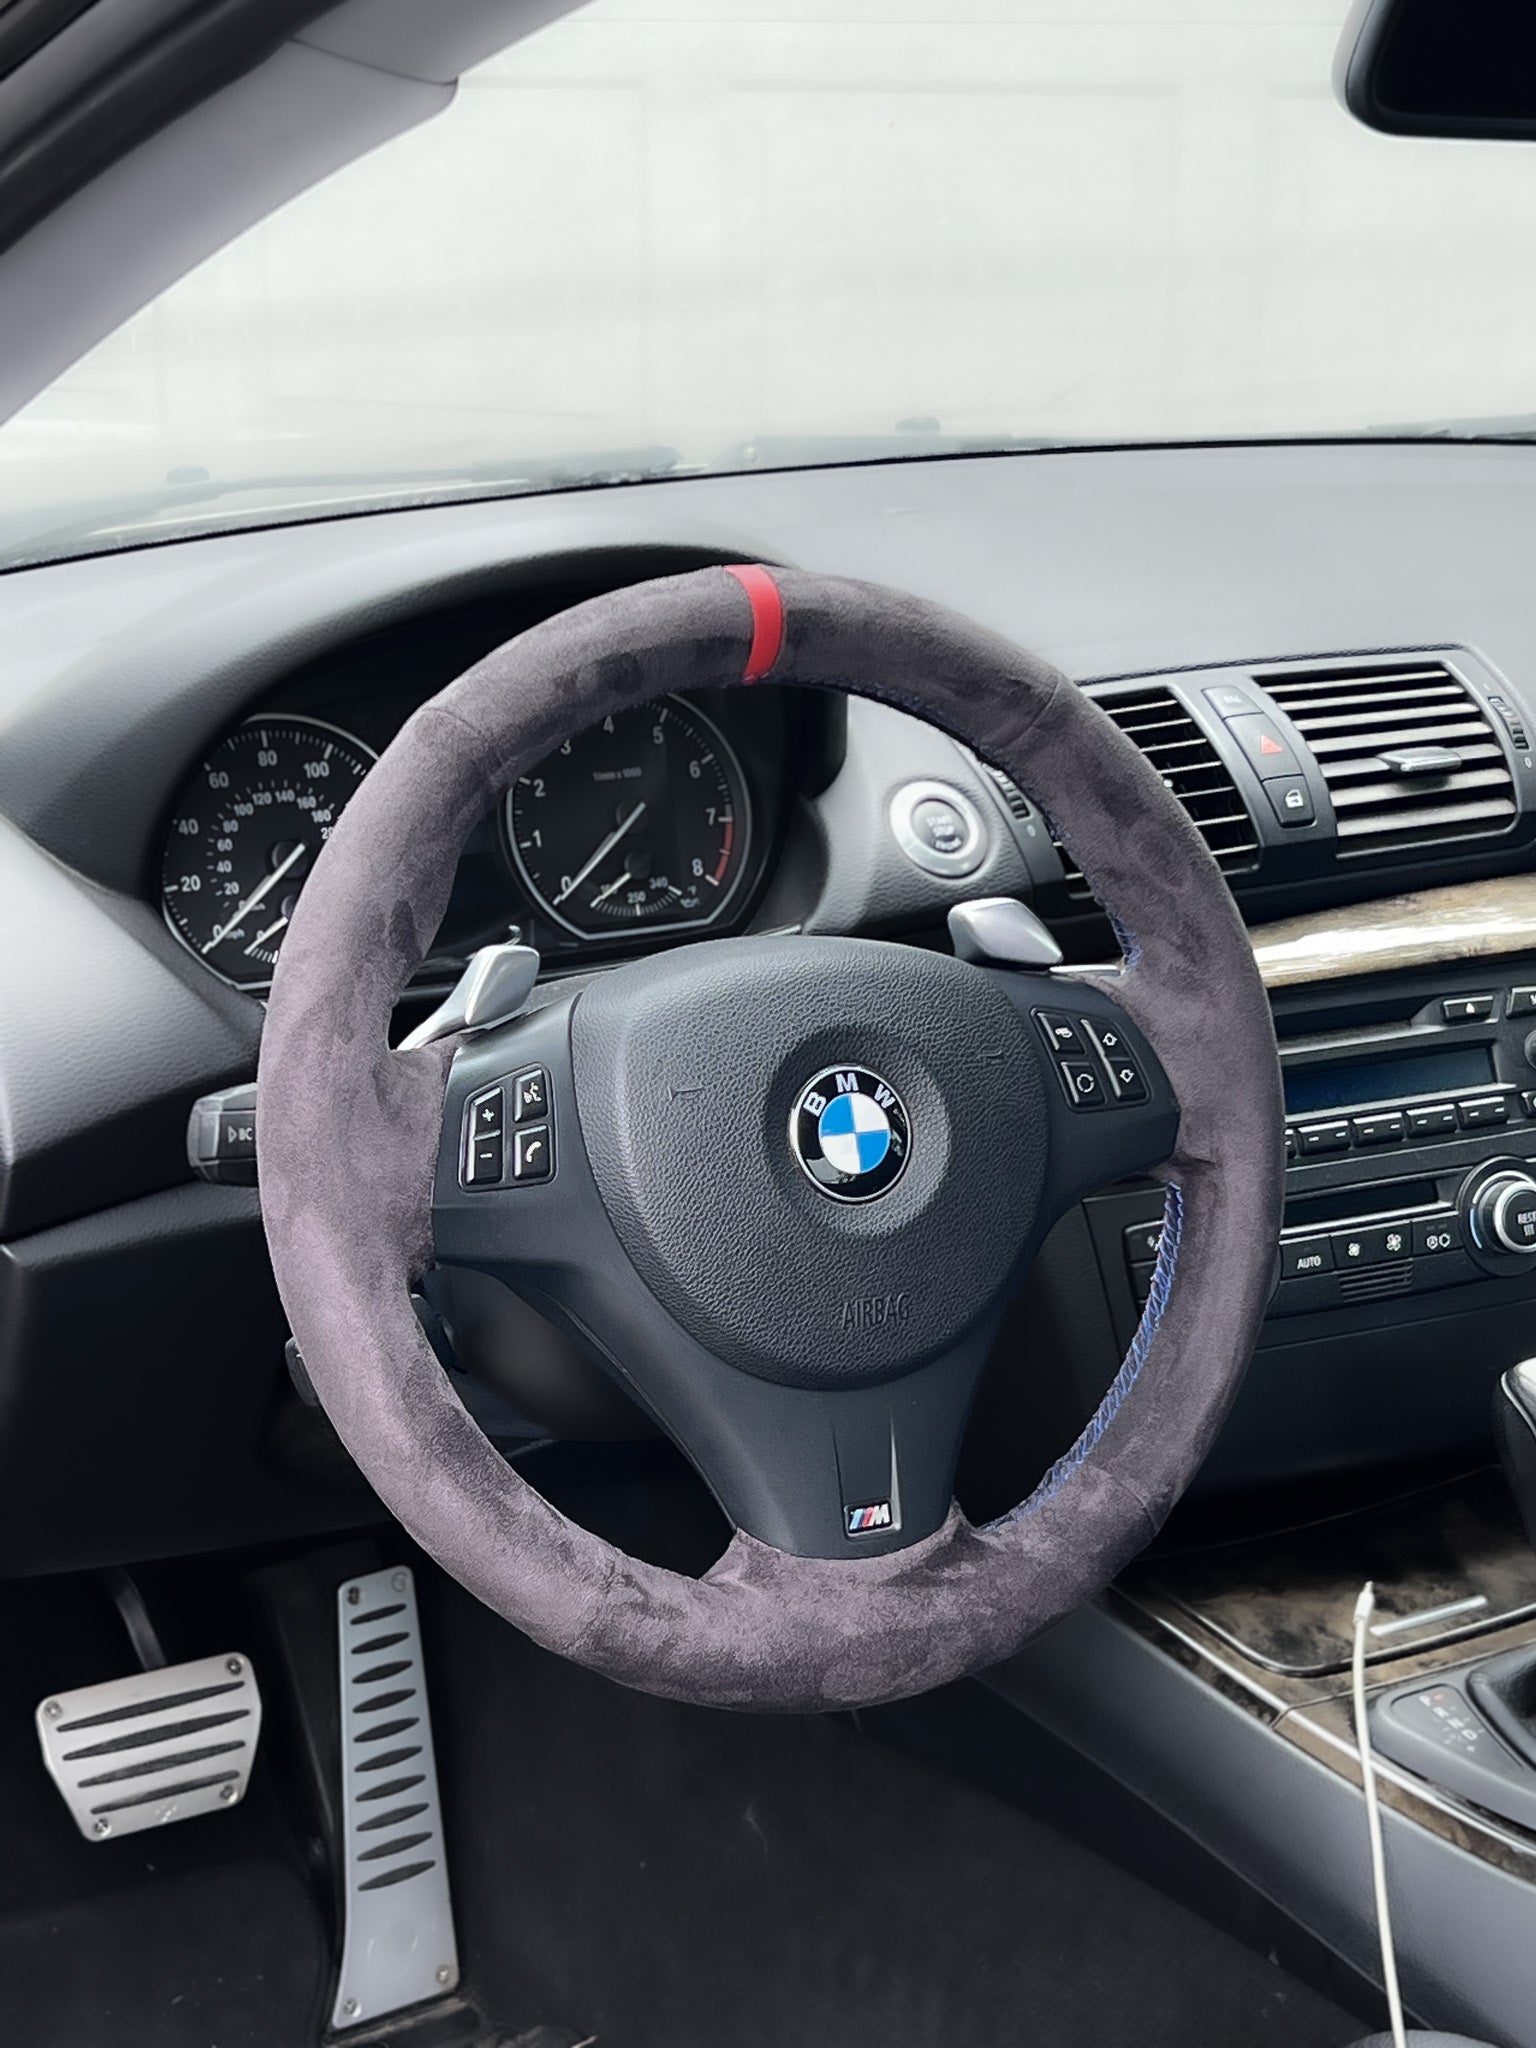 BMW E-Series Alcantara Suede Steering Wheel Cover DIY